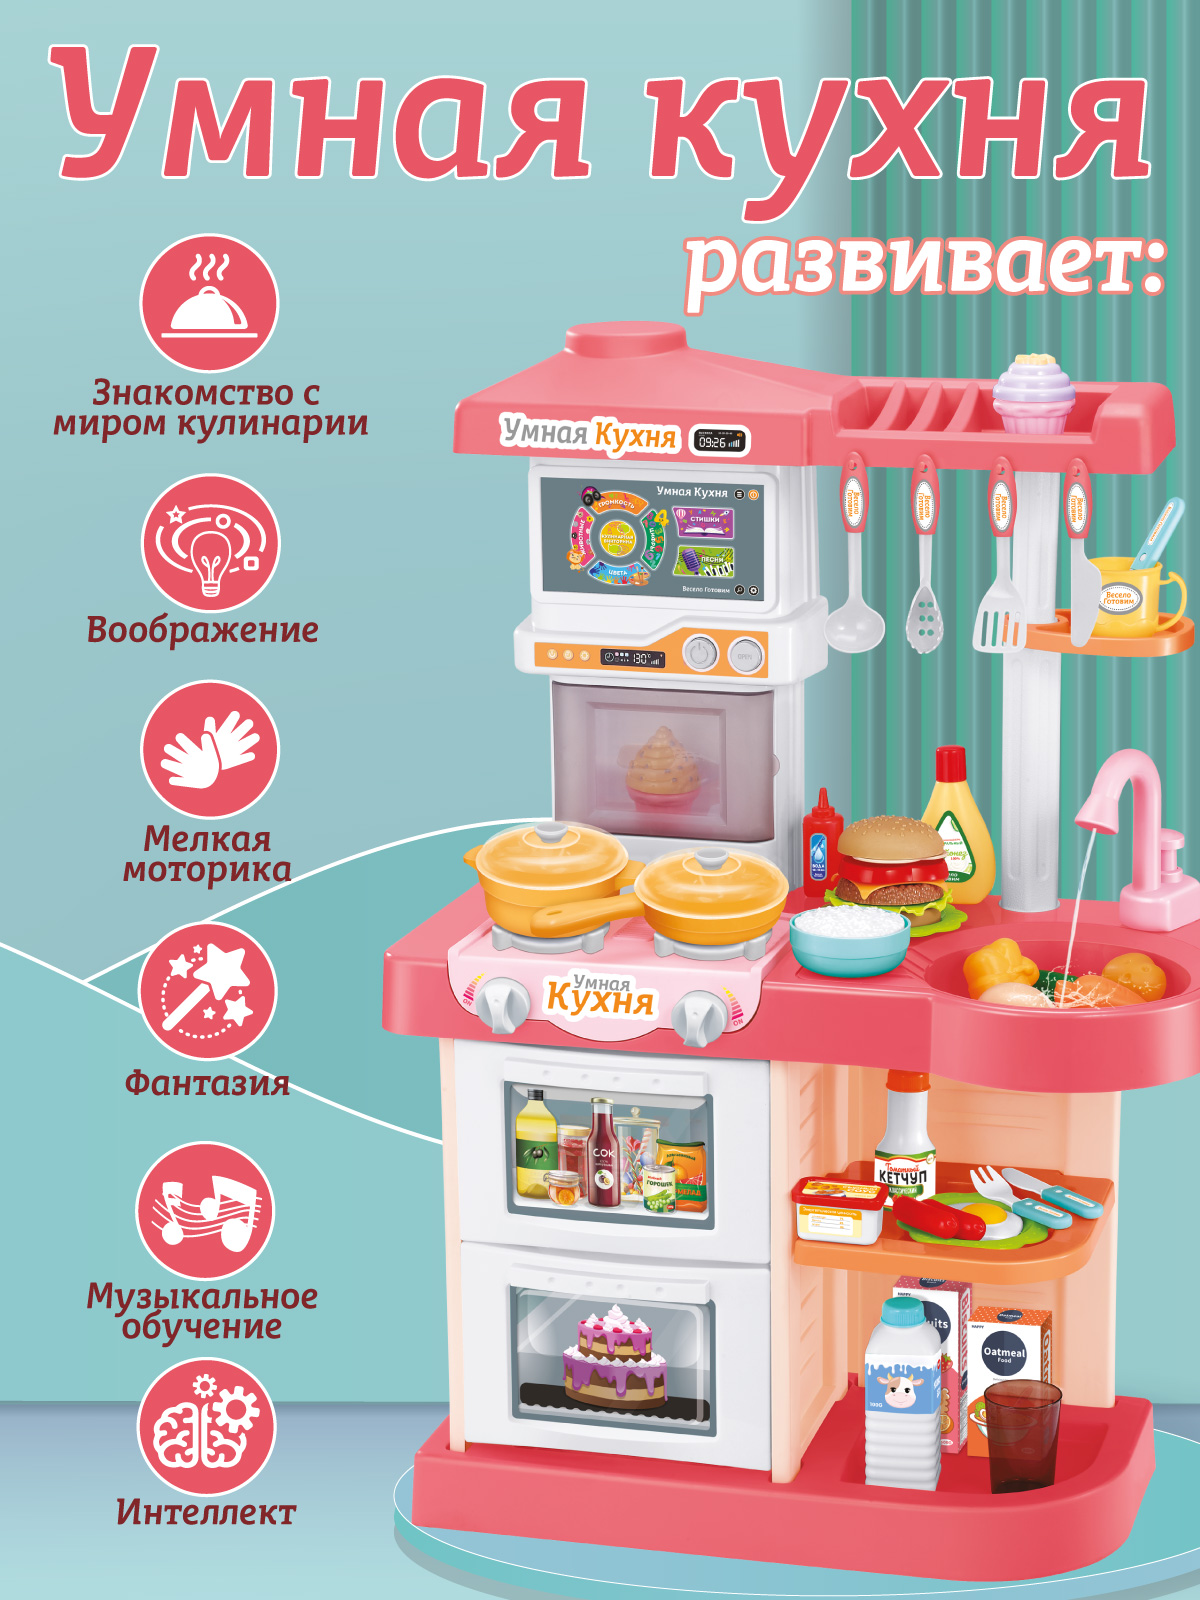 Игровой набор детский AMORE BELLO Умная Кухня с пультом с паром и кран с водой игрушечные продукты и посуда JB0209161 - фото 5